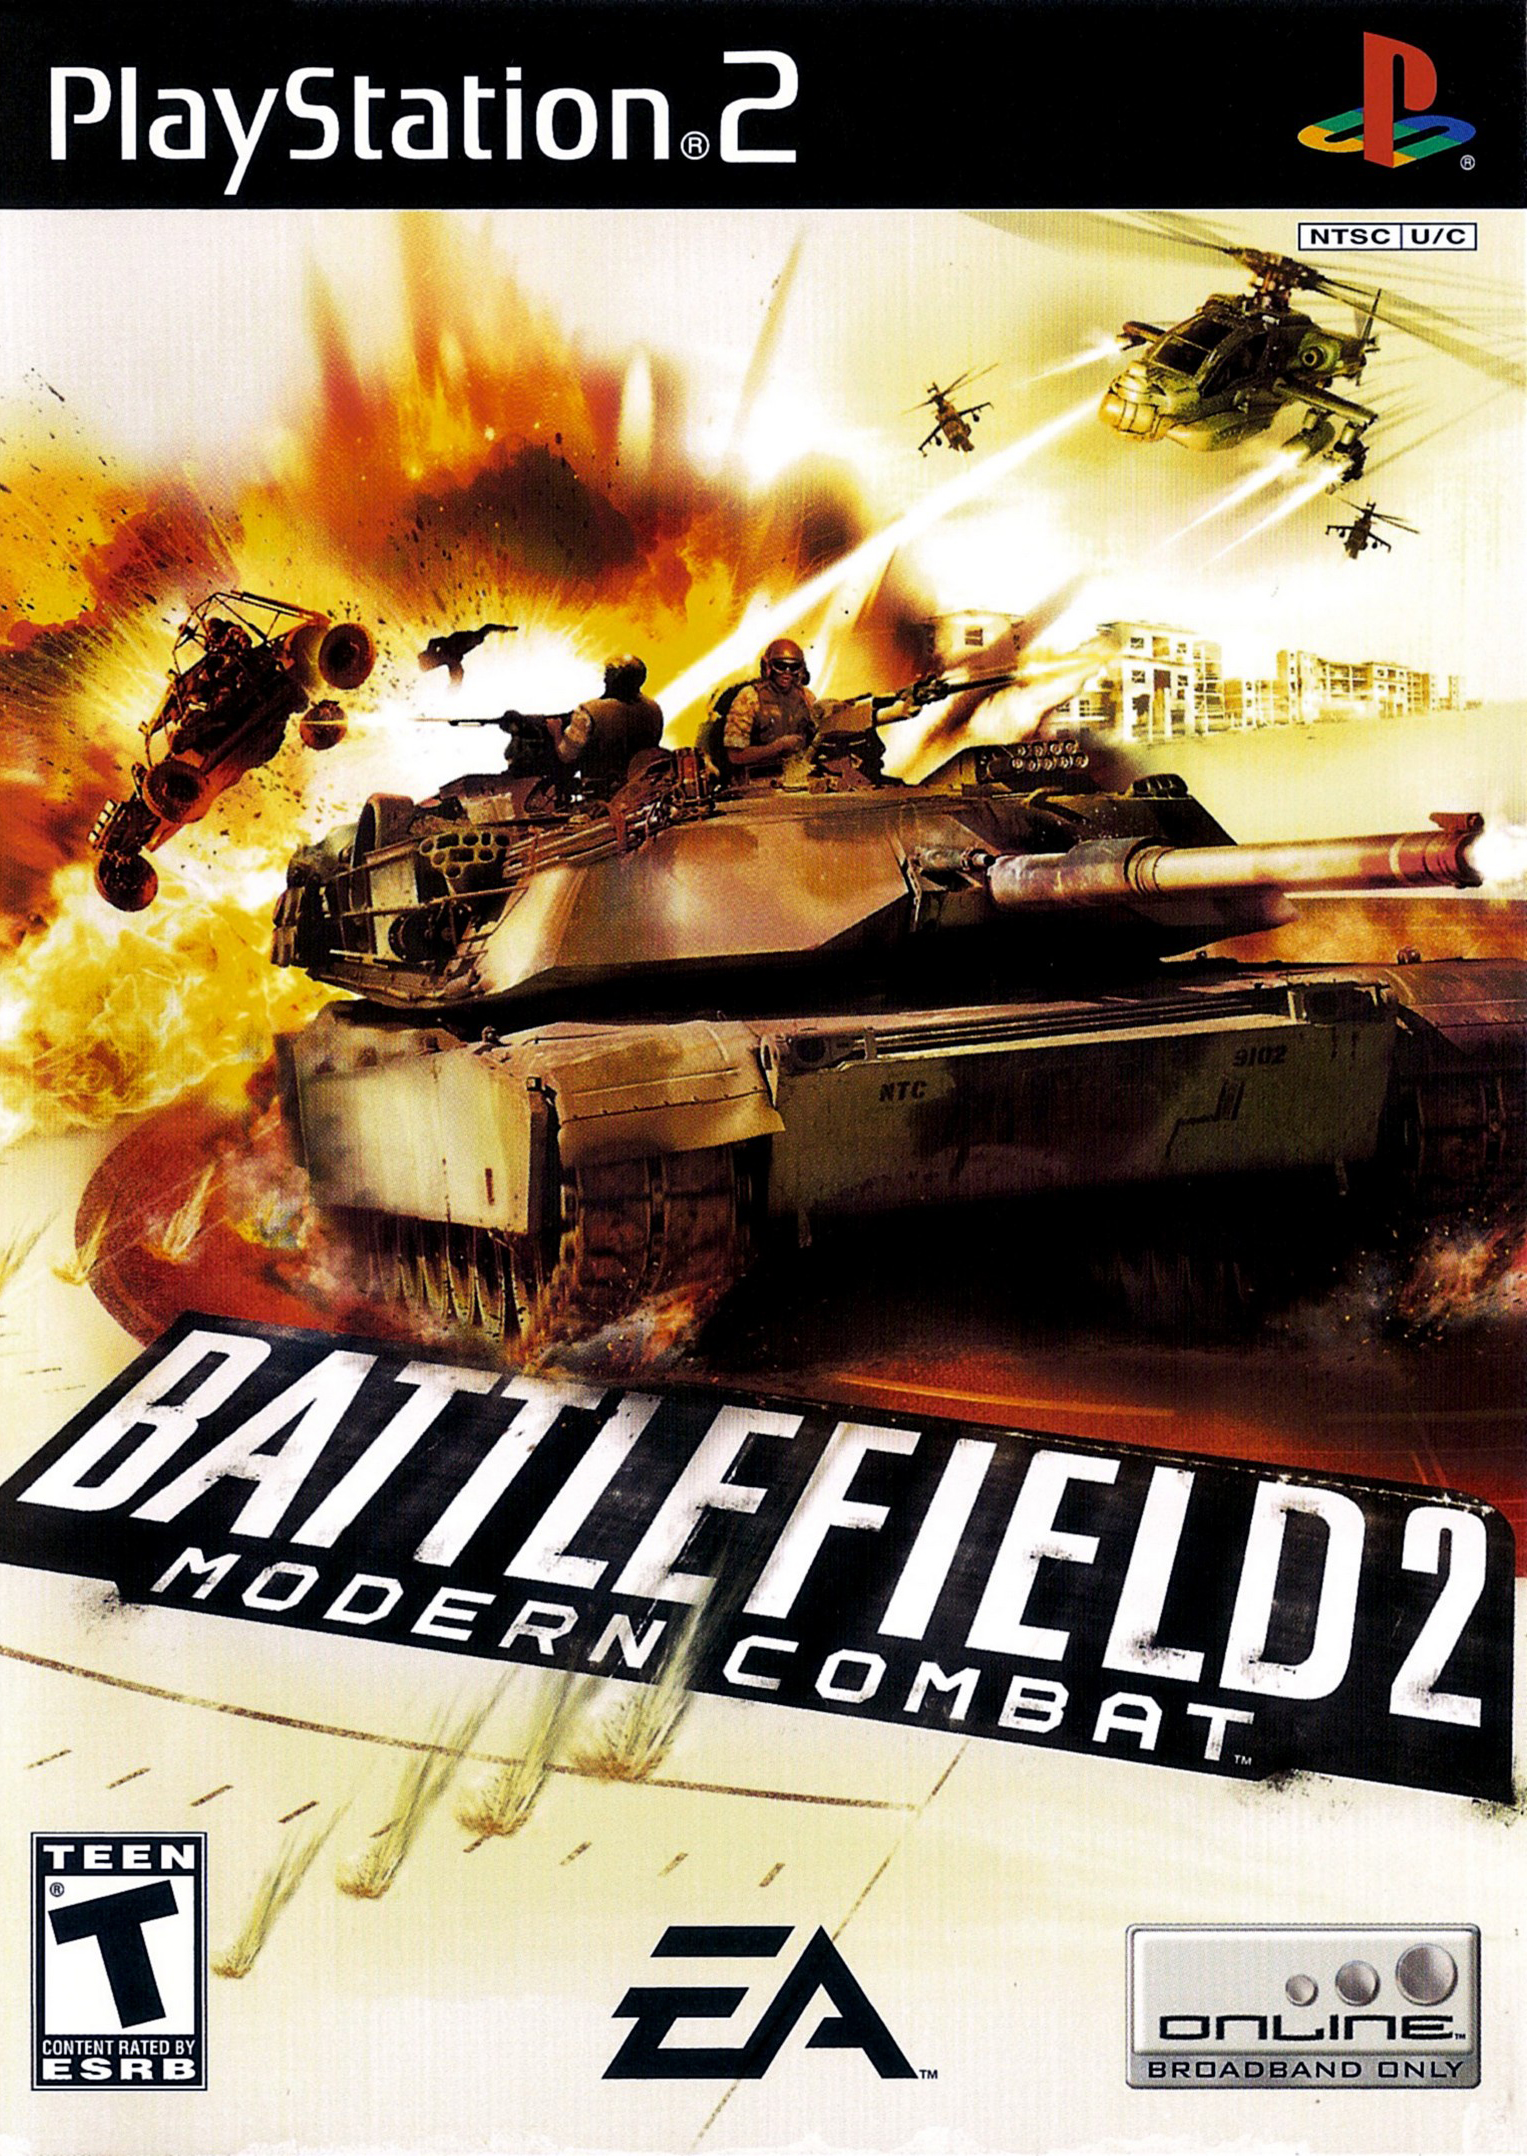 Battlefield 2 Modern Combat /PS2 